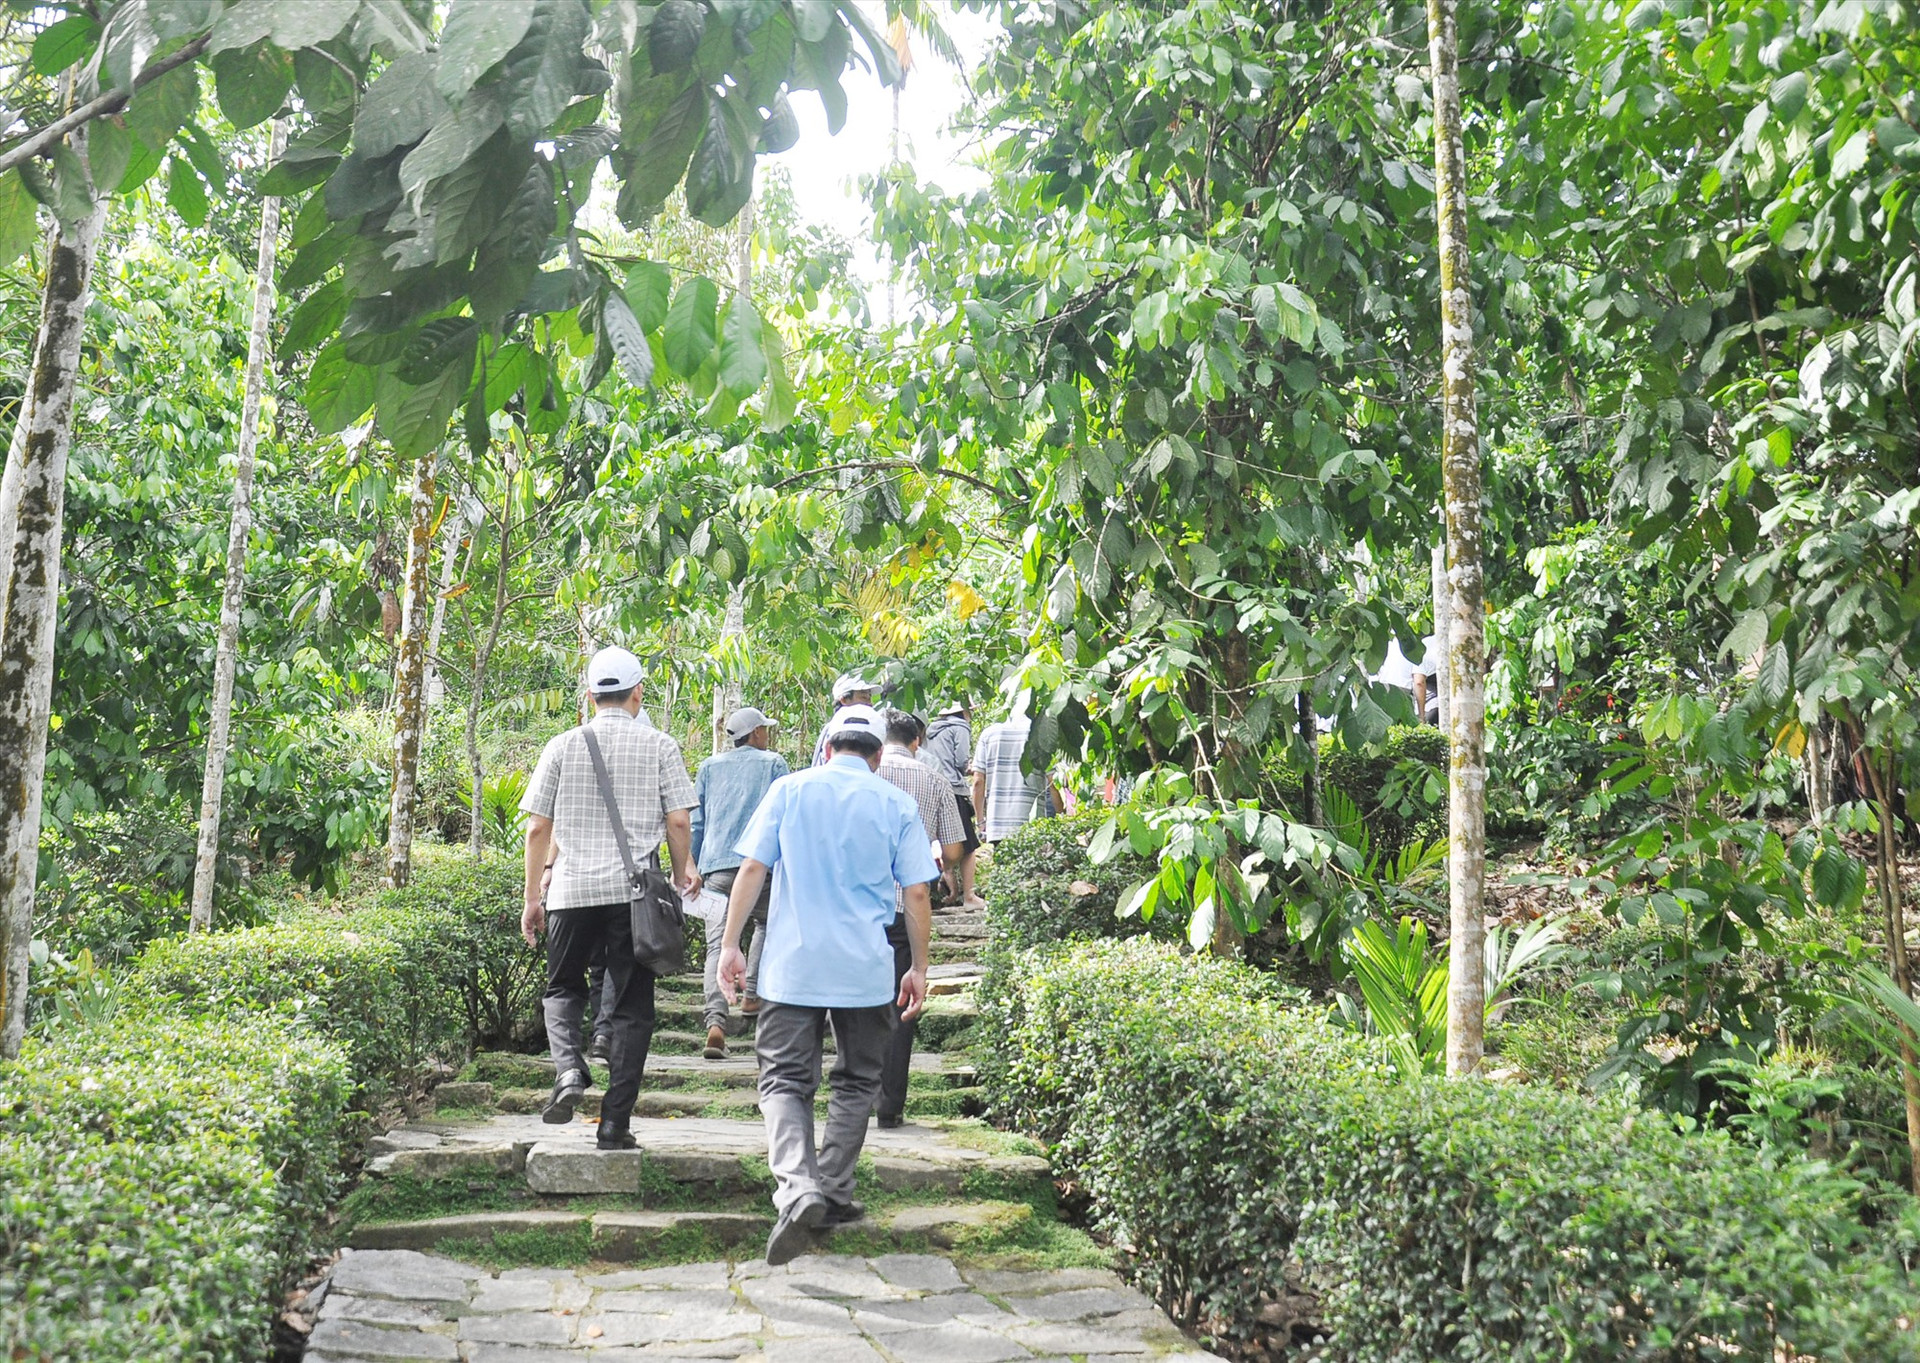 Phong trào cải tạo vườn được nhân rộng, lan tỏa trong cộng đồng ở xã Tiên Cảnh và nhiều địa phương khác trên địa bàn huyện Tiên Phước. Ảnh: V.A